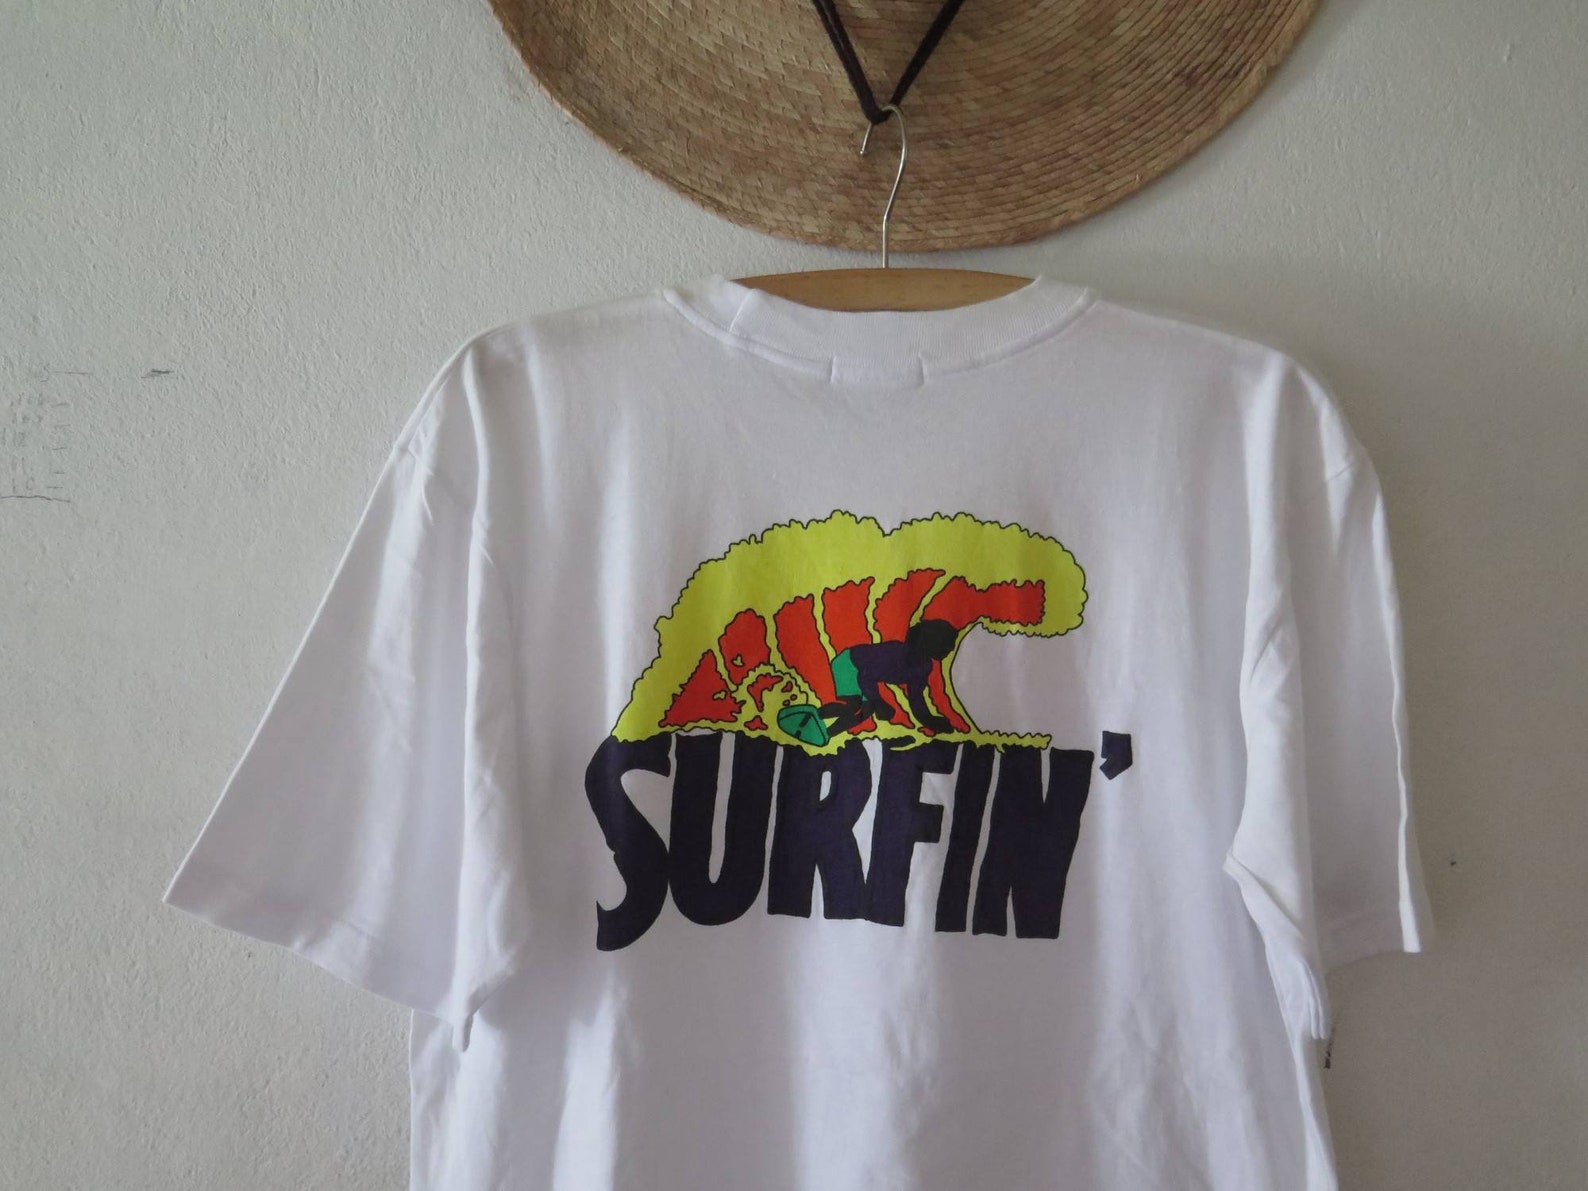 Vintage surf tshirt graphic surf tee hakubotan guam tshirt | Etsy